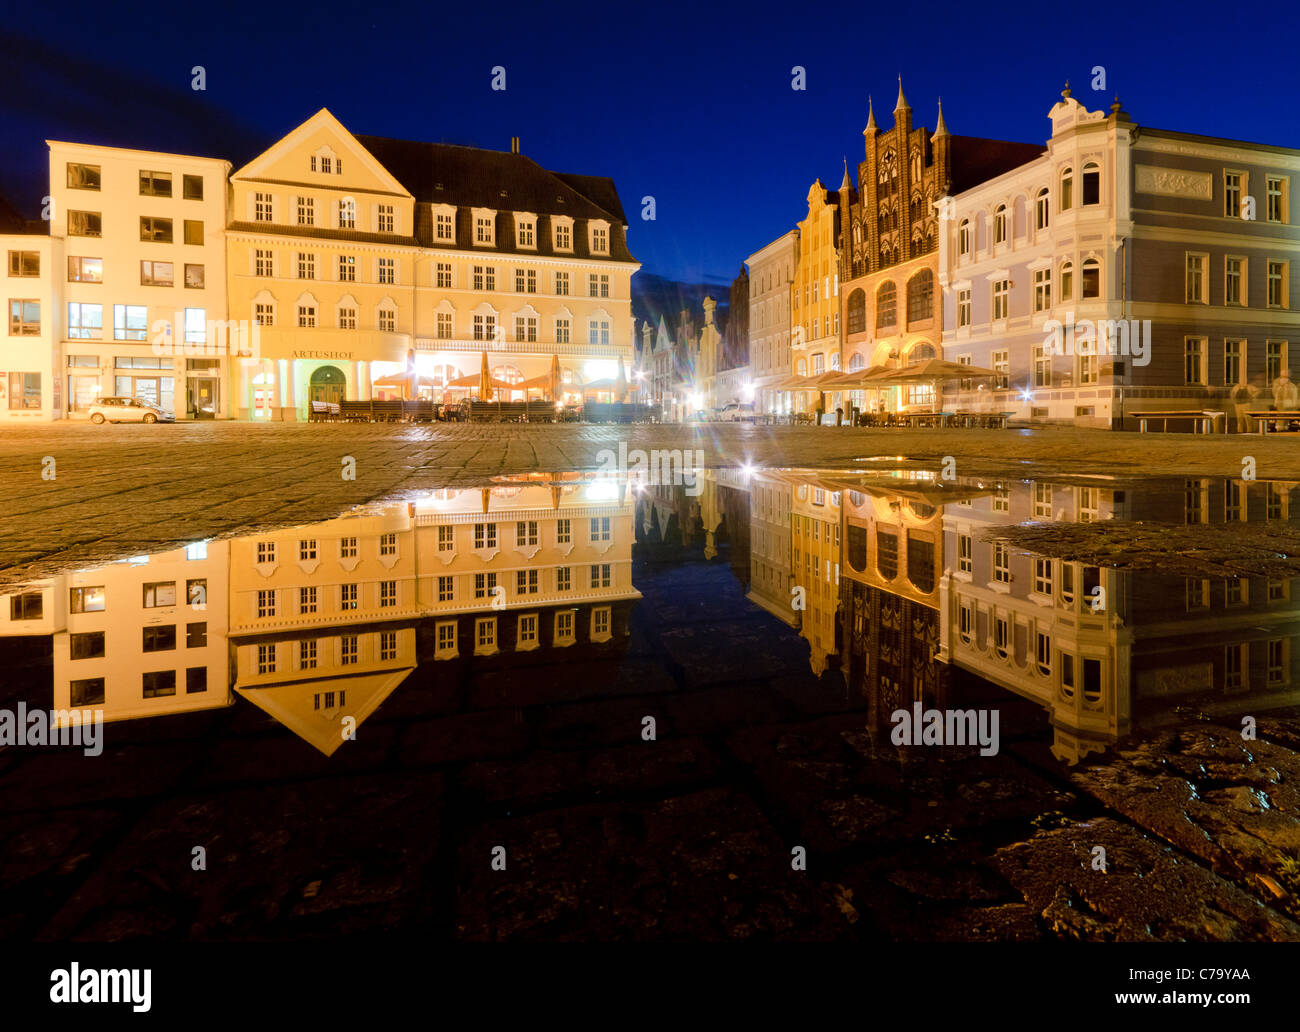 Place du vieux marché reflété dans une flaque d'eau la nuit, de la mer Baltique, Stralsund, Mecklembourg-Poméranie-Occidentale, Allemagne, Europe Banque D'Images